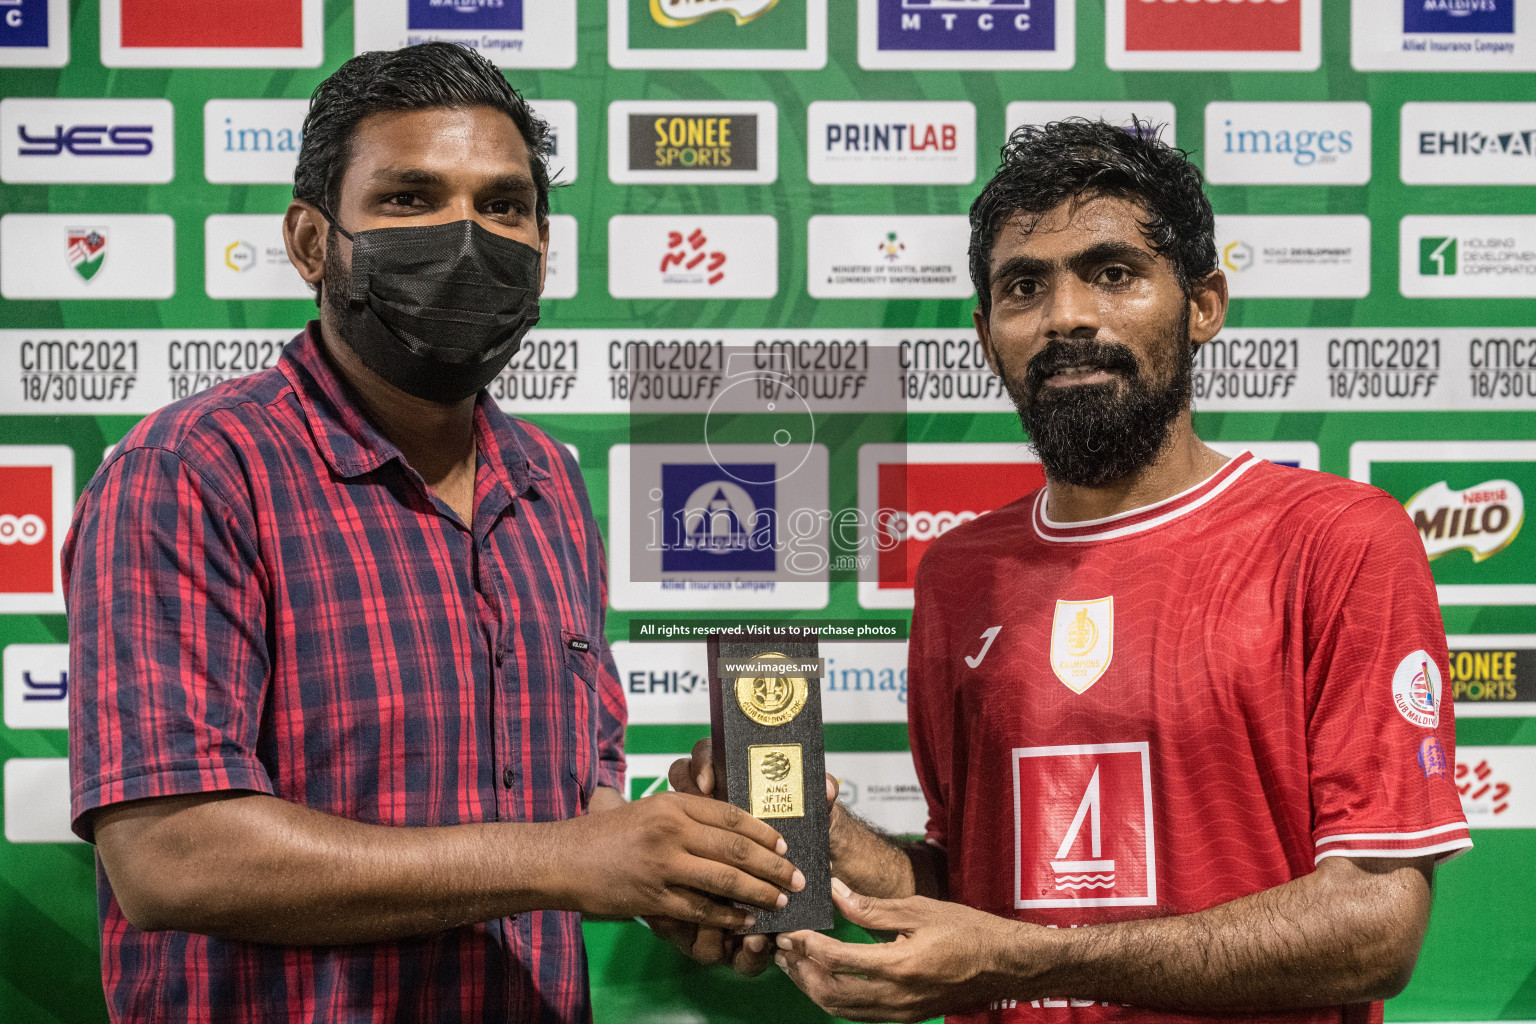 Club Maldives Day 8 - 29th November 2021, at Hulhumale. Photo: Nausham Waheed / Images.mv